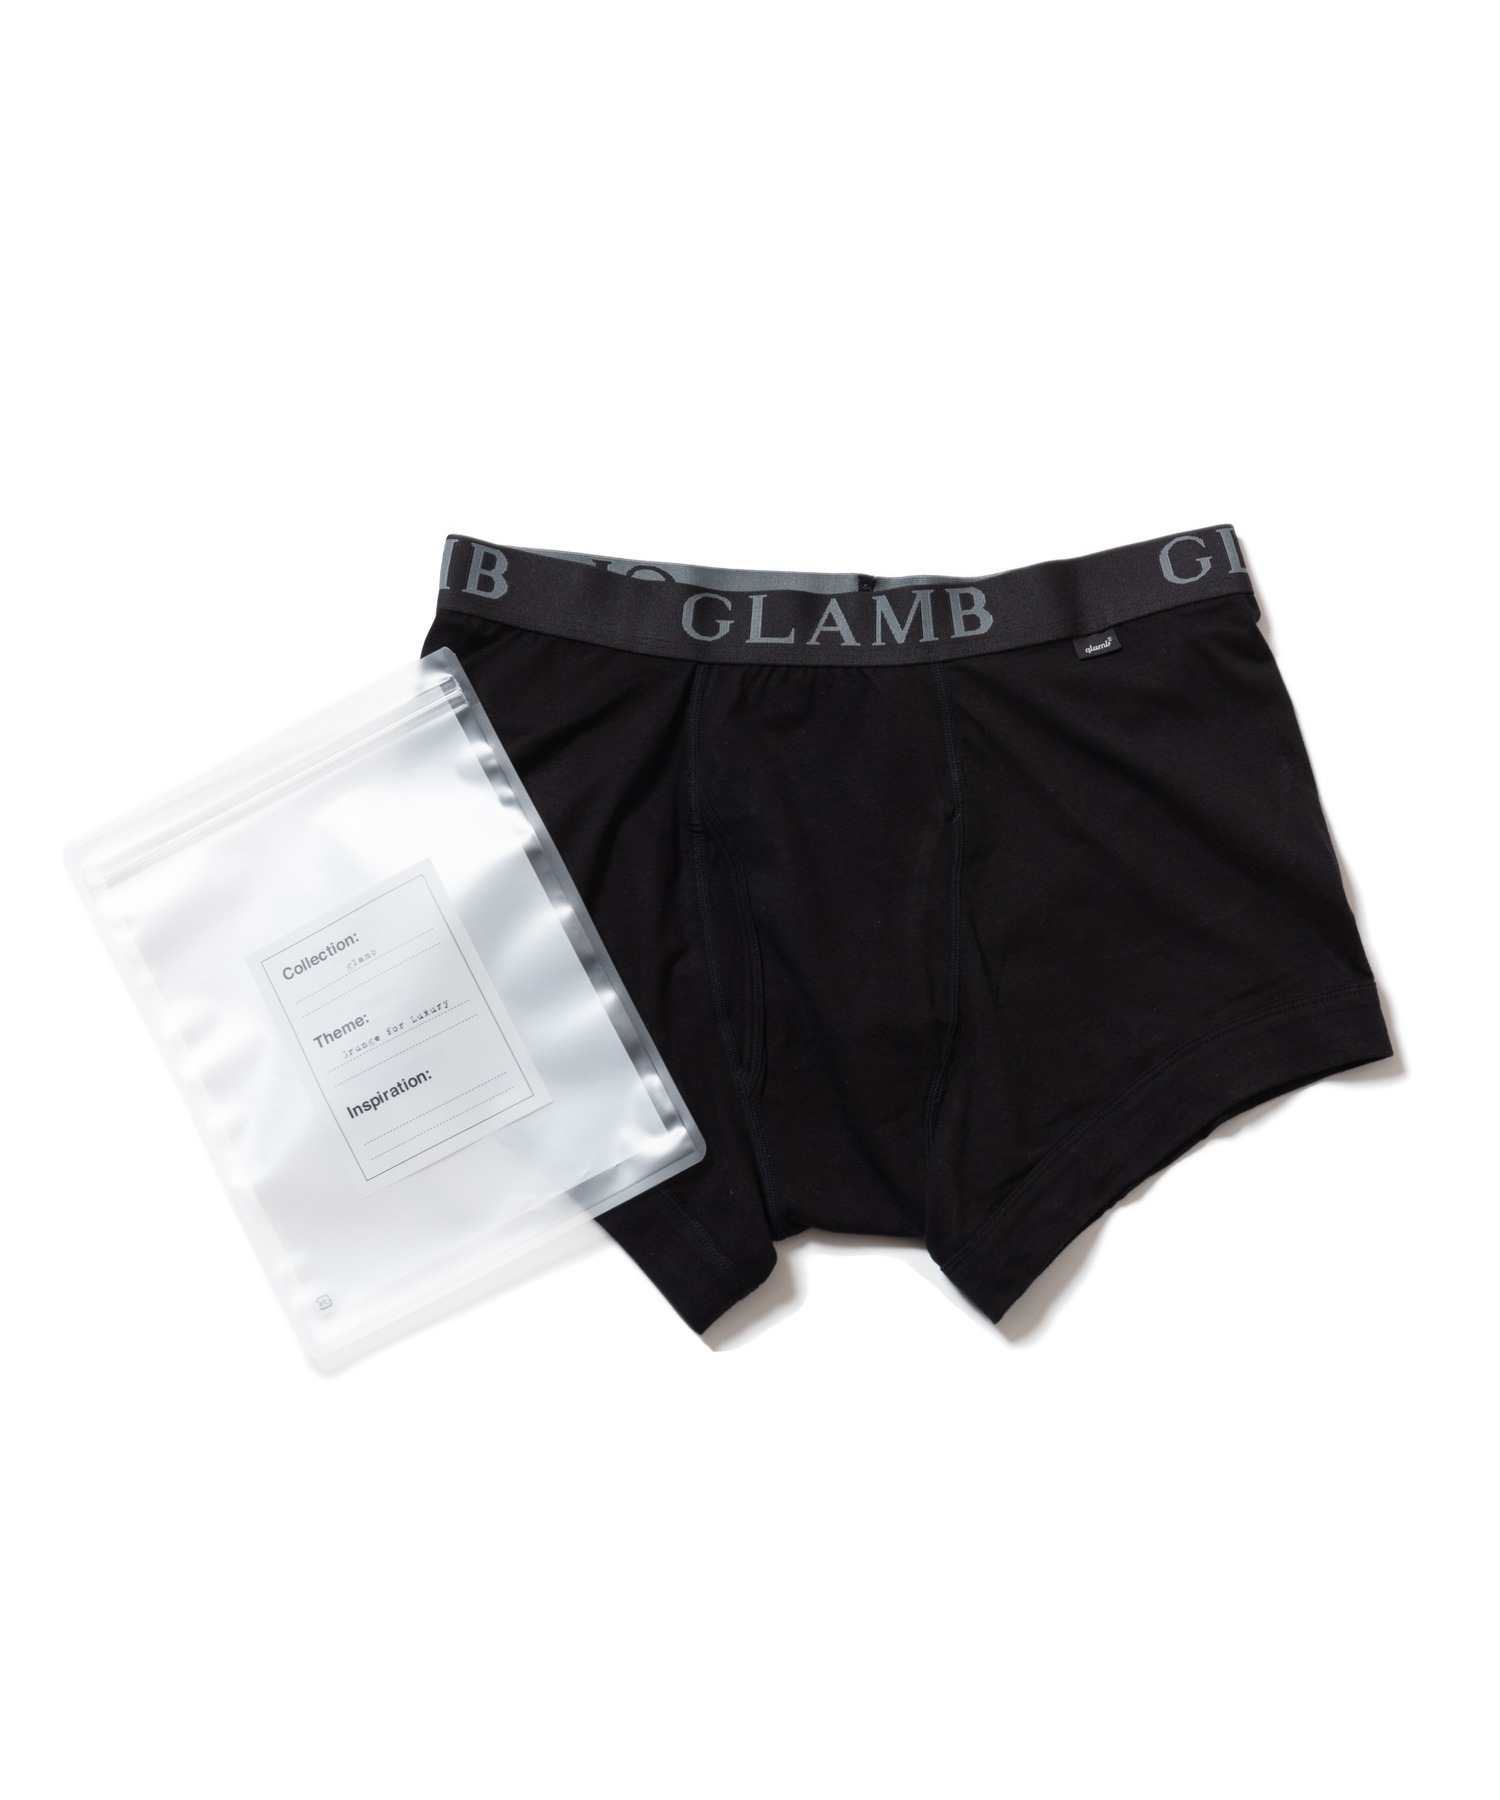 glambGLAMB Logo 送料無料 boxer pants グラムロゴボクサーパンツ 格安即決